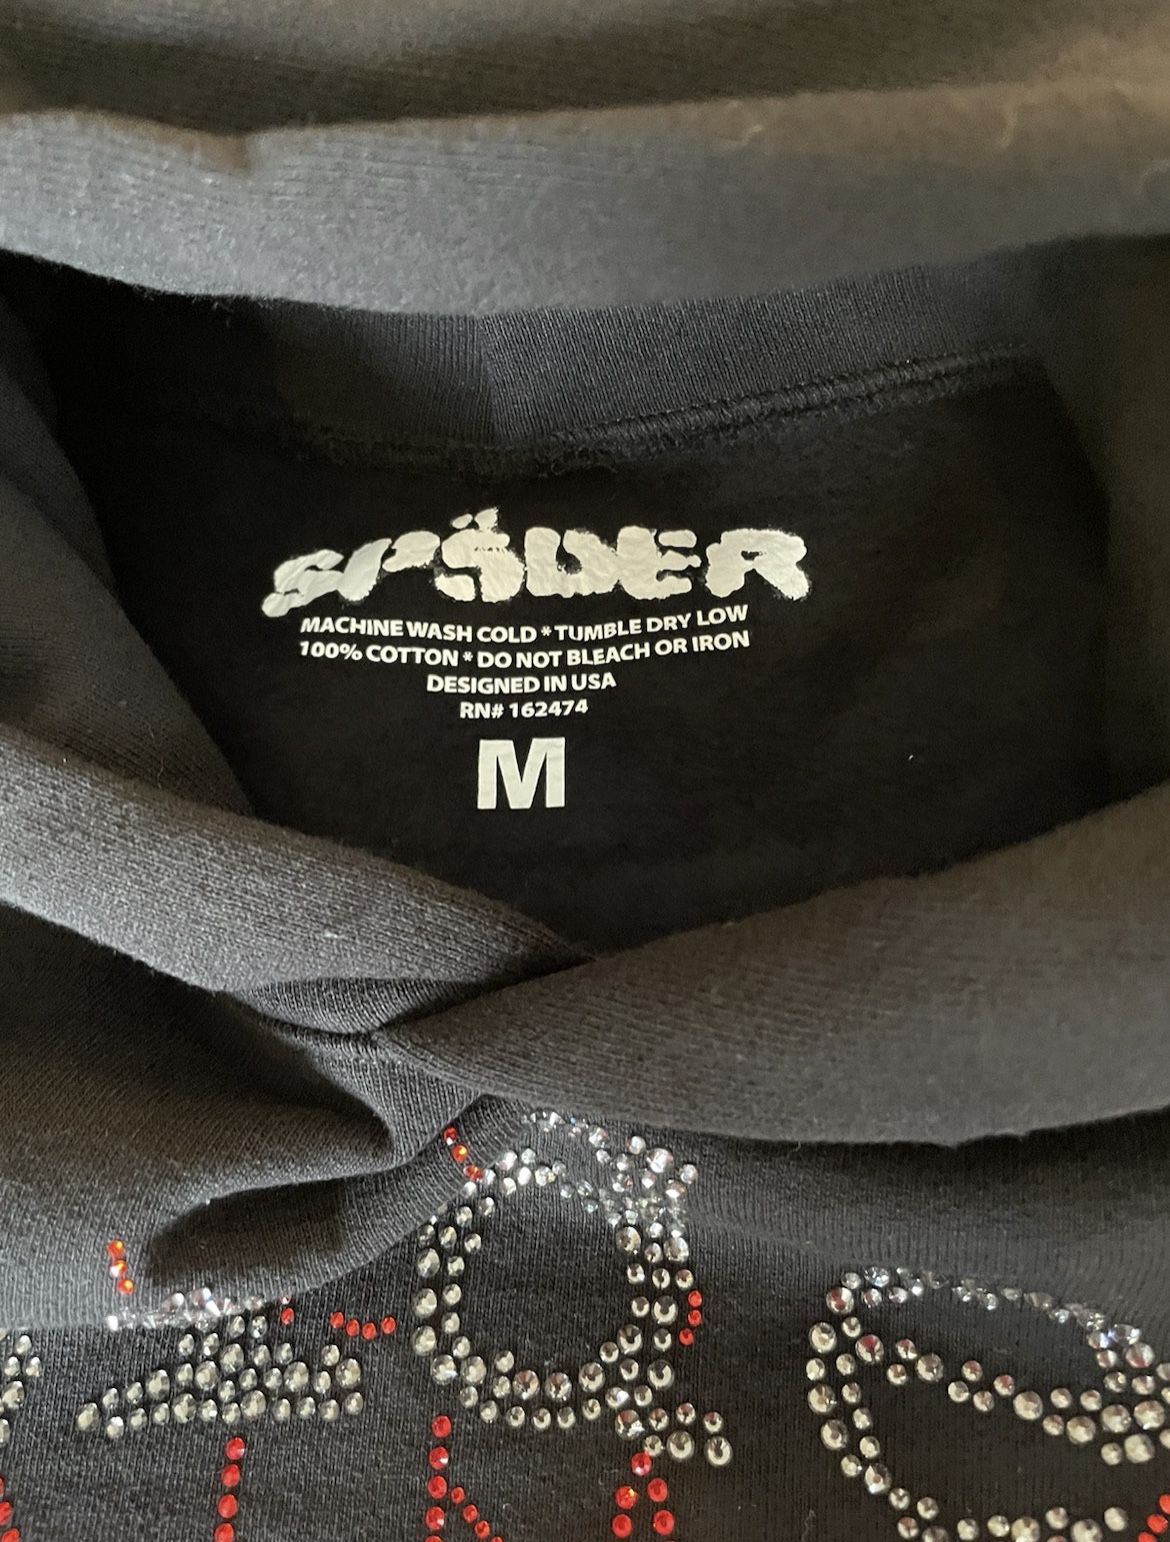 Size M-Sp5der worldwide OG Rhinestone hoodie black Size Medium brand new